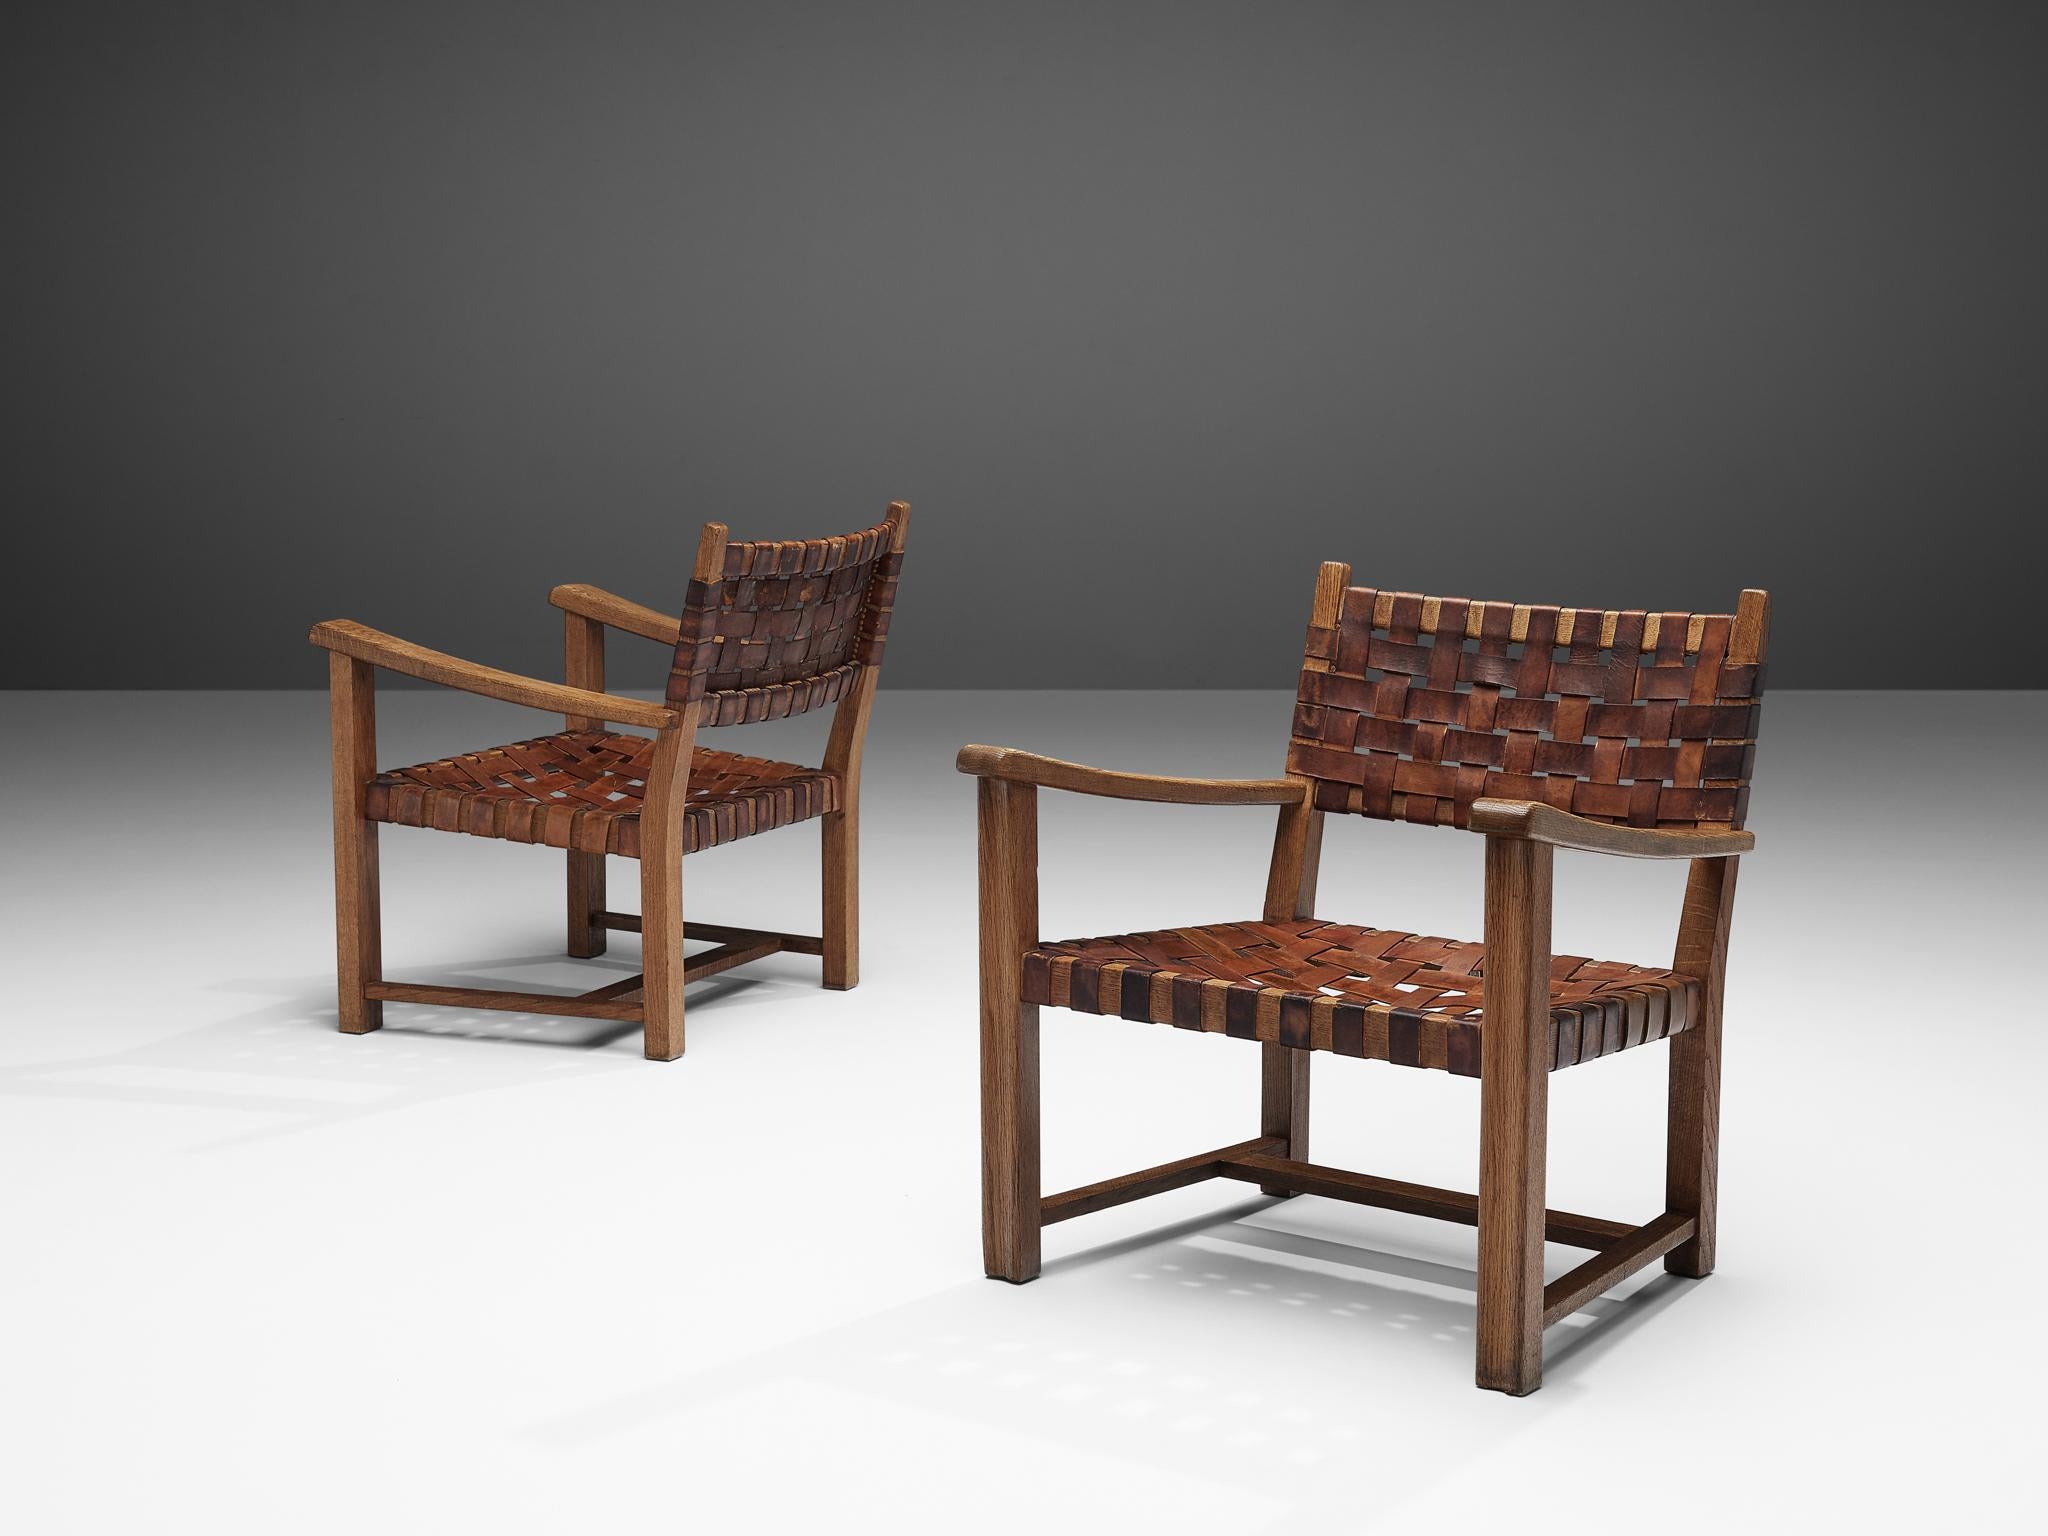 Paar Sessel, Leder cognac, Eiche massiv, Europa, 1960er Jahre

Ein Paar wunderschöne Sessel aus massiver Eiche. Diese Sessel haben ein rustikales Aussehen mit ihren robusten Eichenrahmen. Die Armlehnen sind leicht geschwungen und haben abgerundete